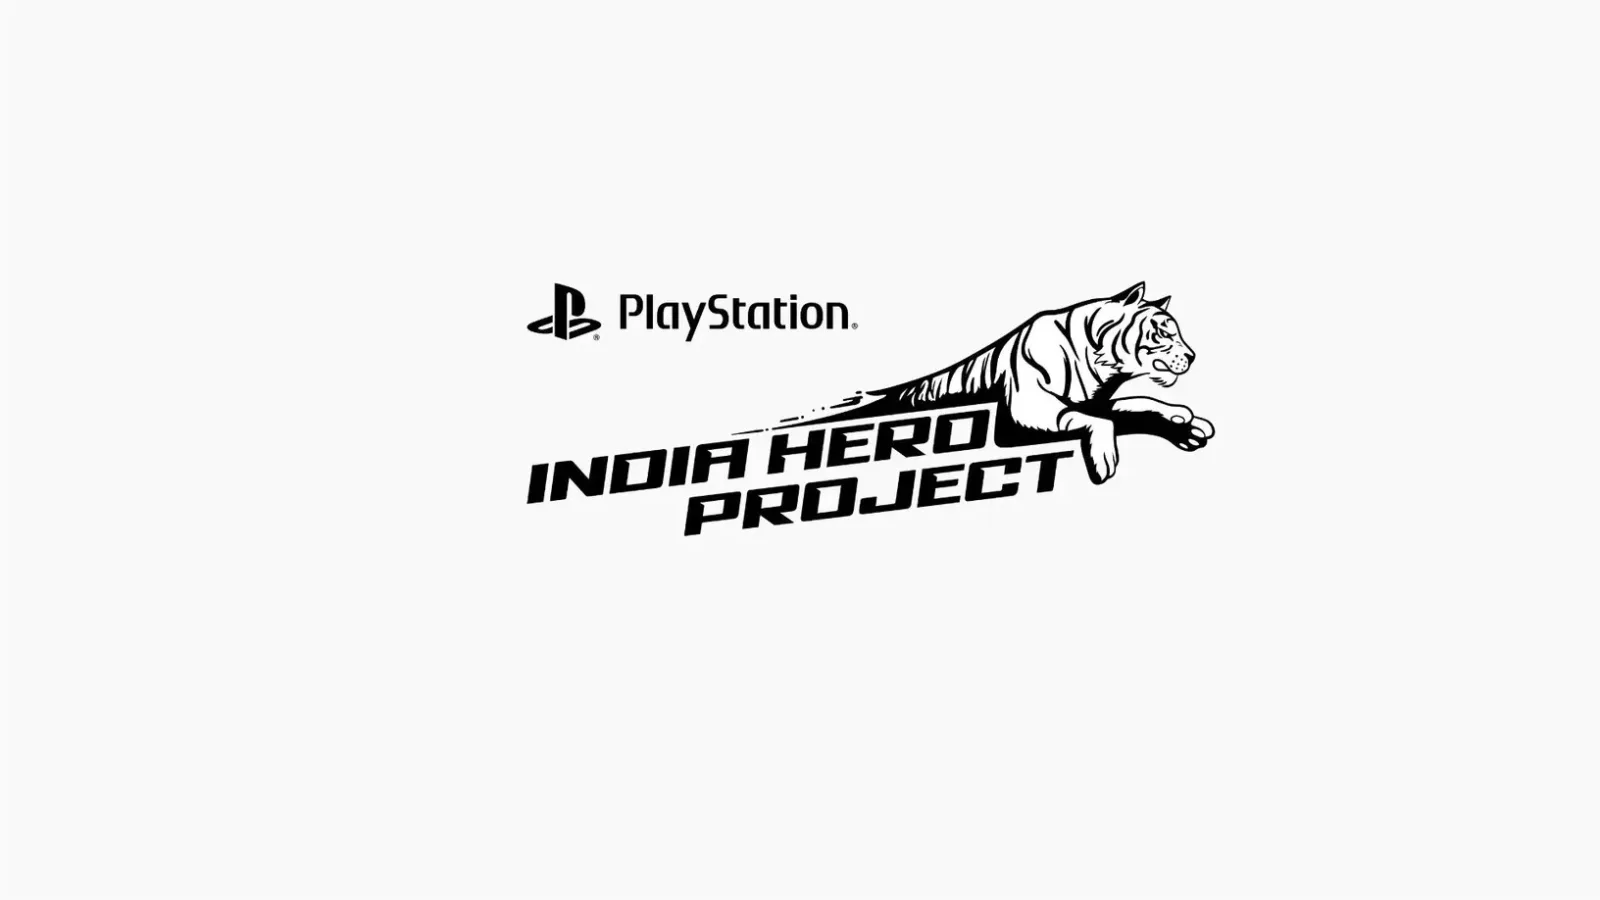 “印度之星”计划首批五个游戏公布